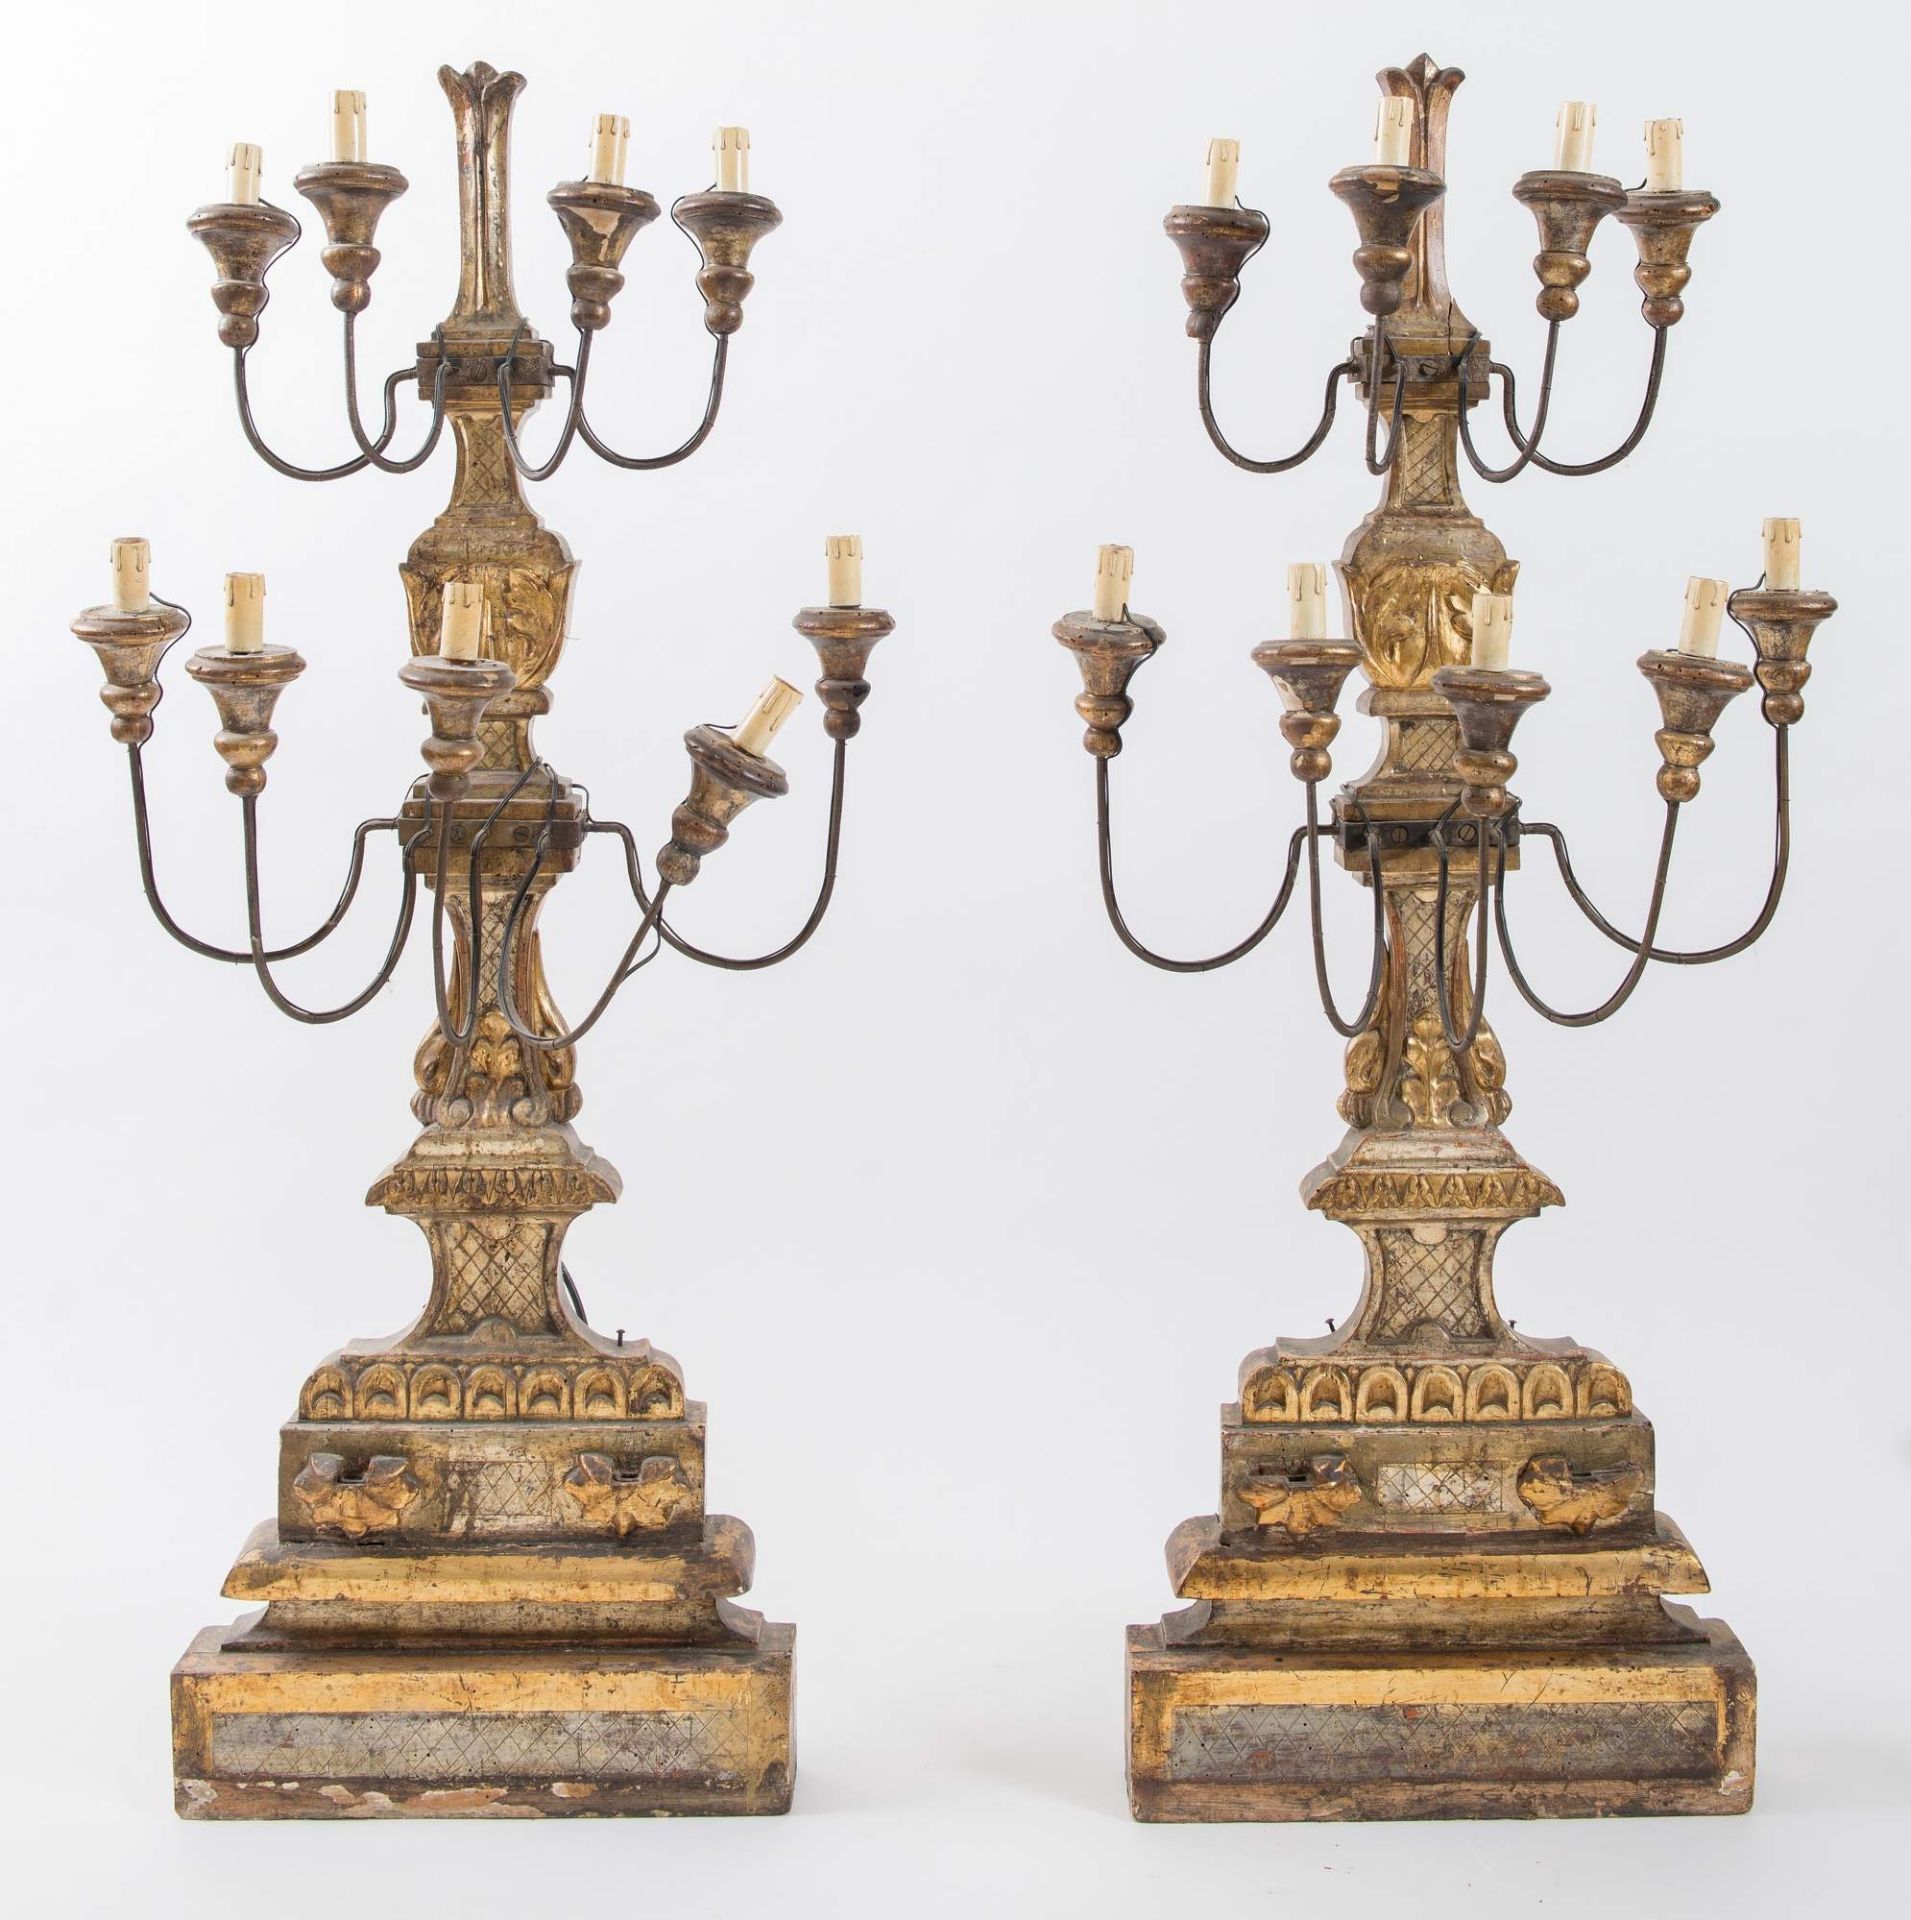 Coppia di grandi candelabri in legno intagliato e dorato. Toscana, ultimo quarto del XVIII secolo.